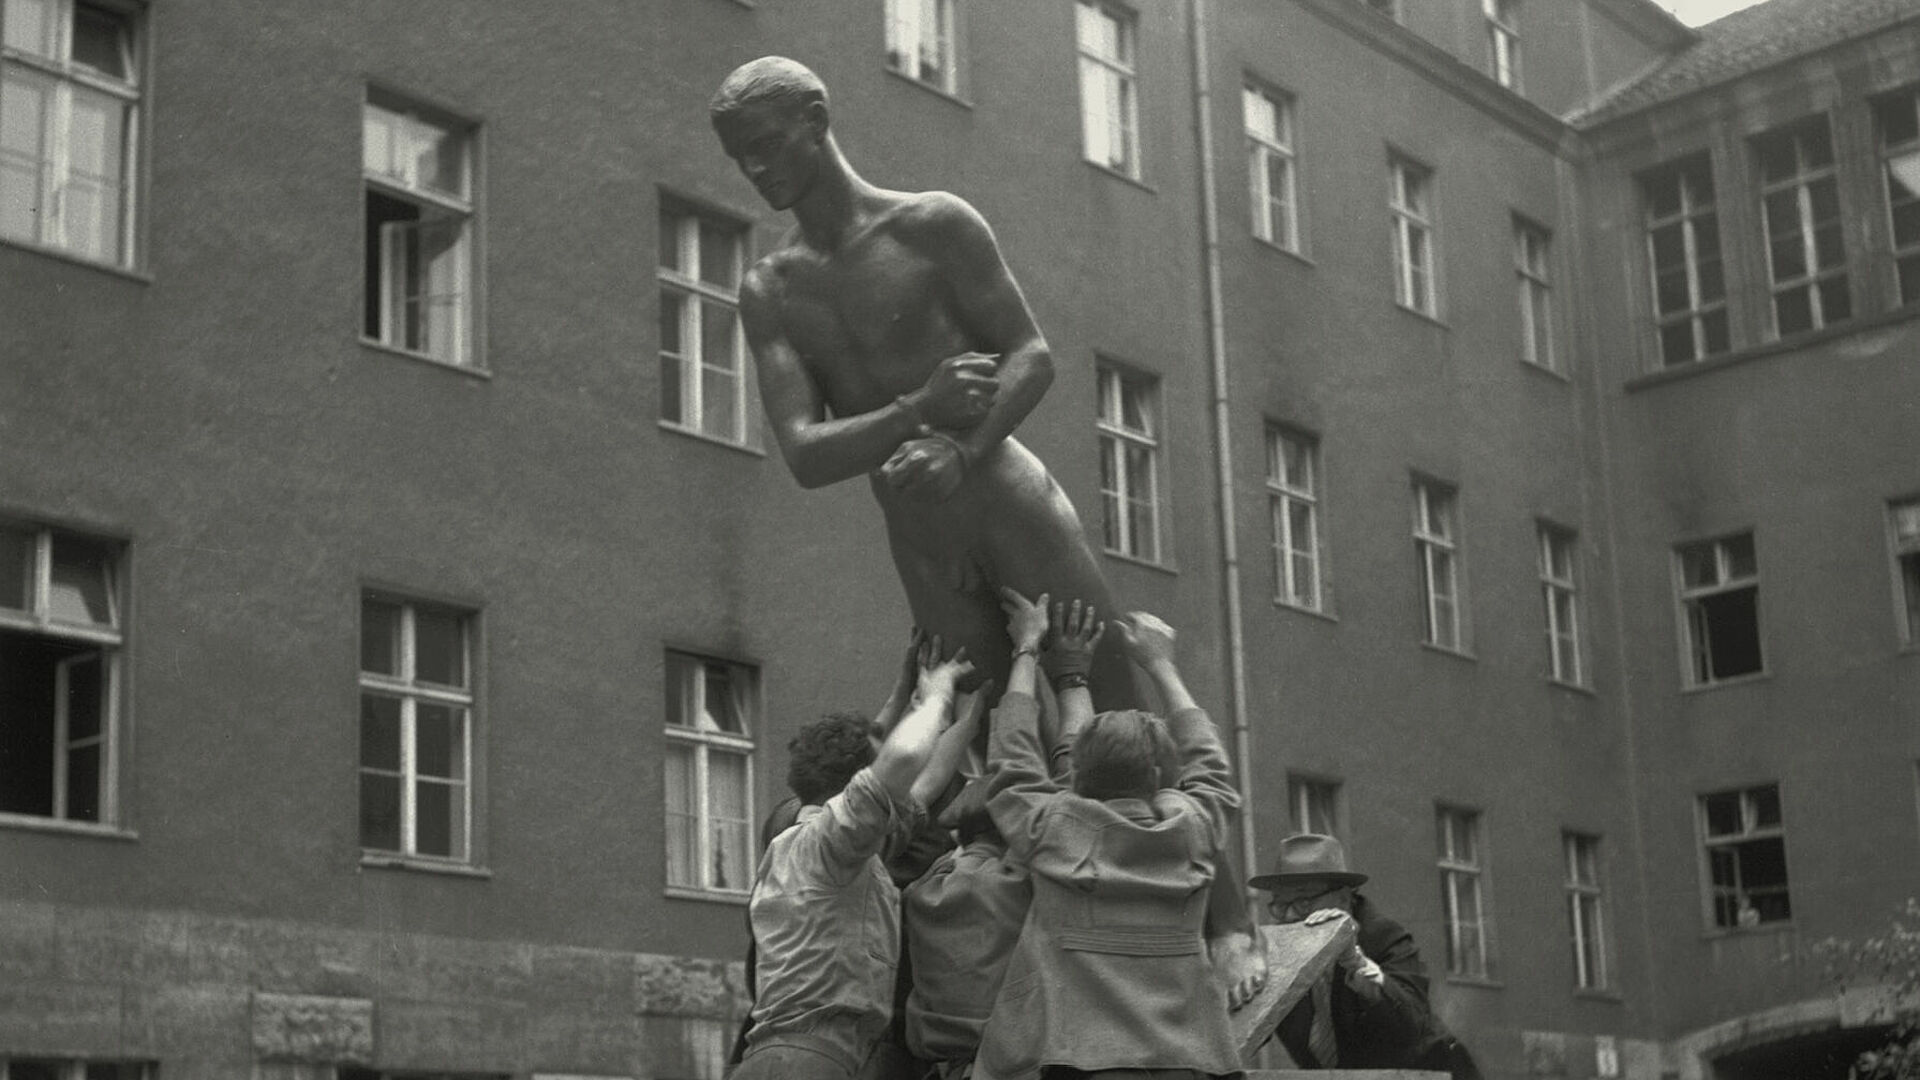 Richard Scheibes „Ehrenmal der Opfer des 20. Juli 1944“ wird im Hof des Bendlerblocks aufgestellt, Berlin 1953, Foto: Liselotte Orgel-Köhne, © Deutsches Historisches Museum, Berlin